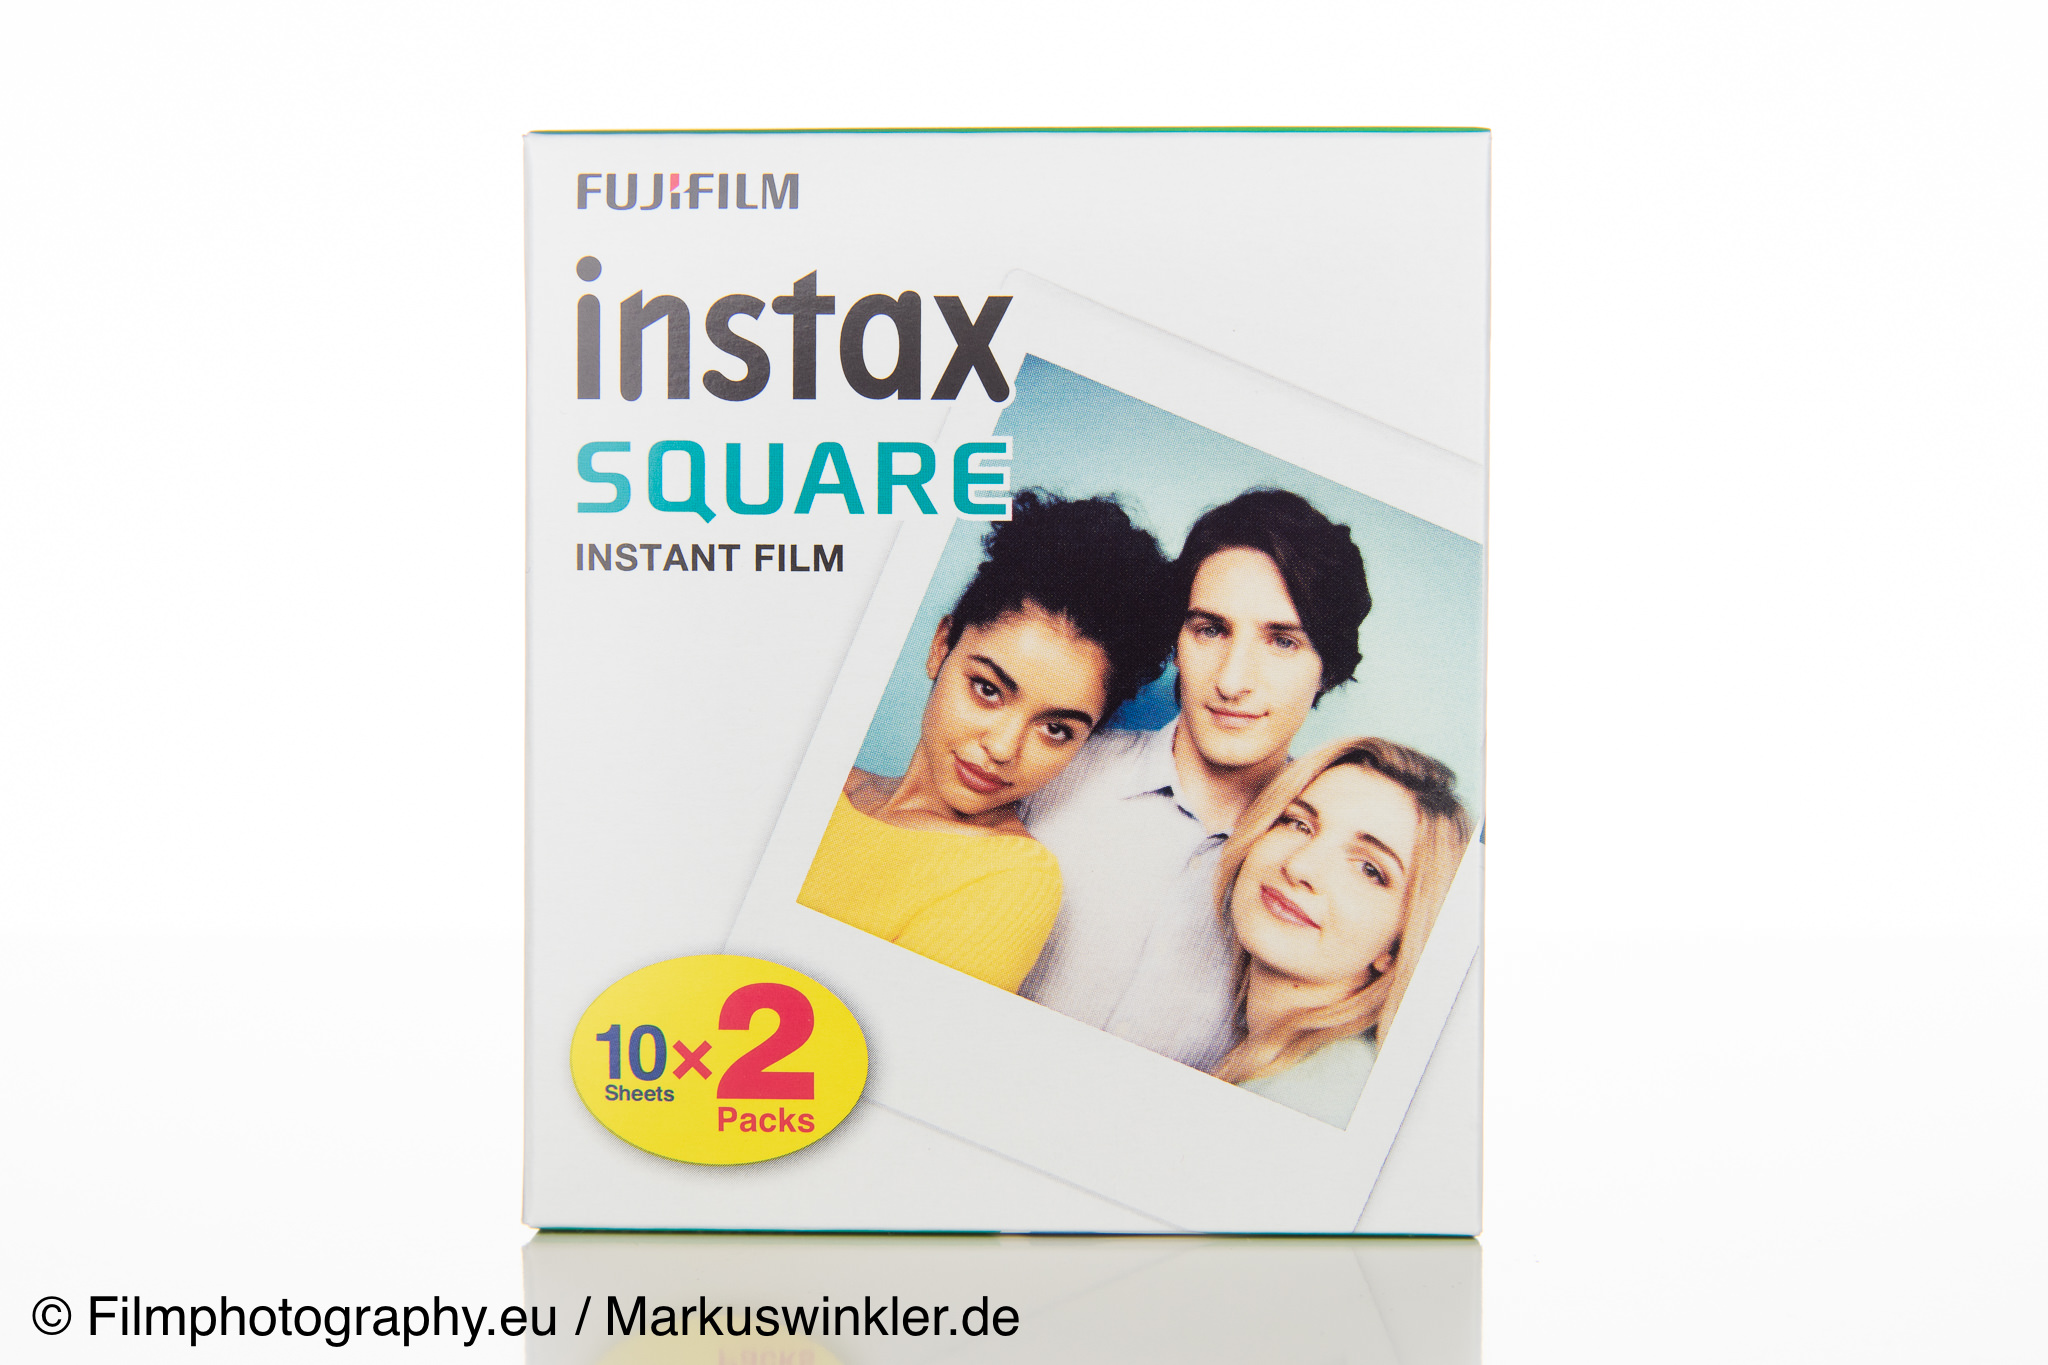 Fujifilm Instax Square Film - Instant film information